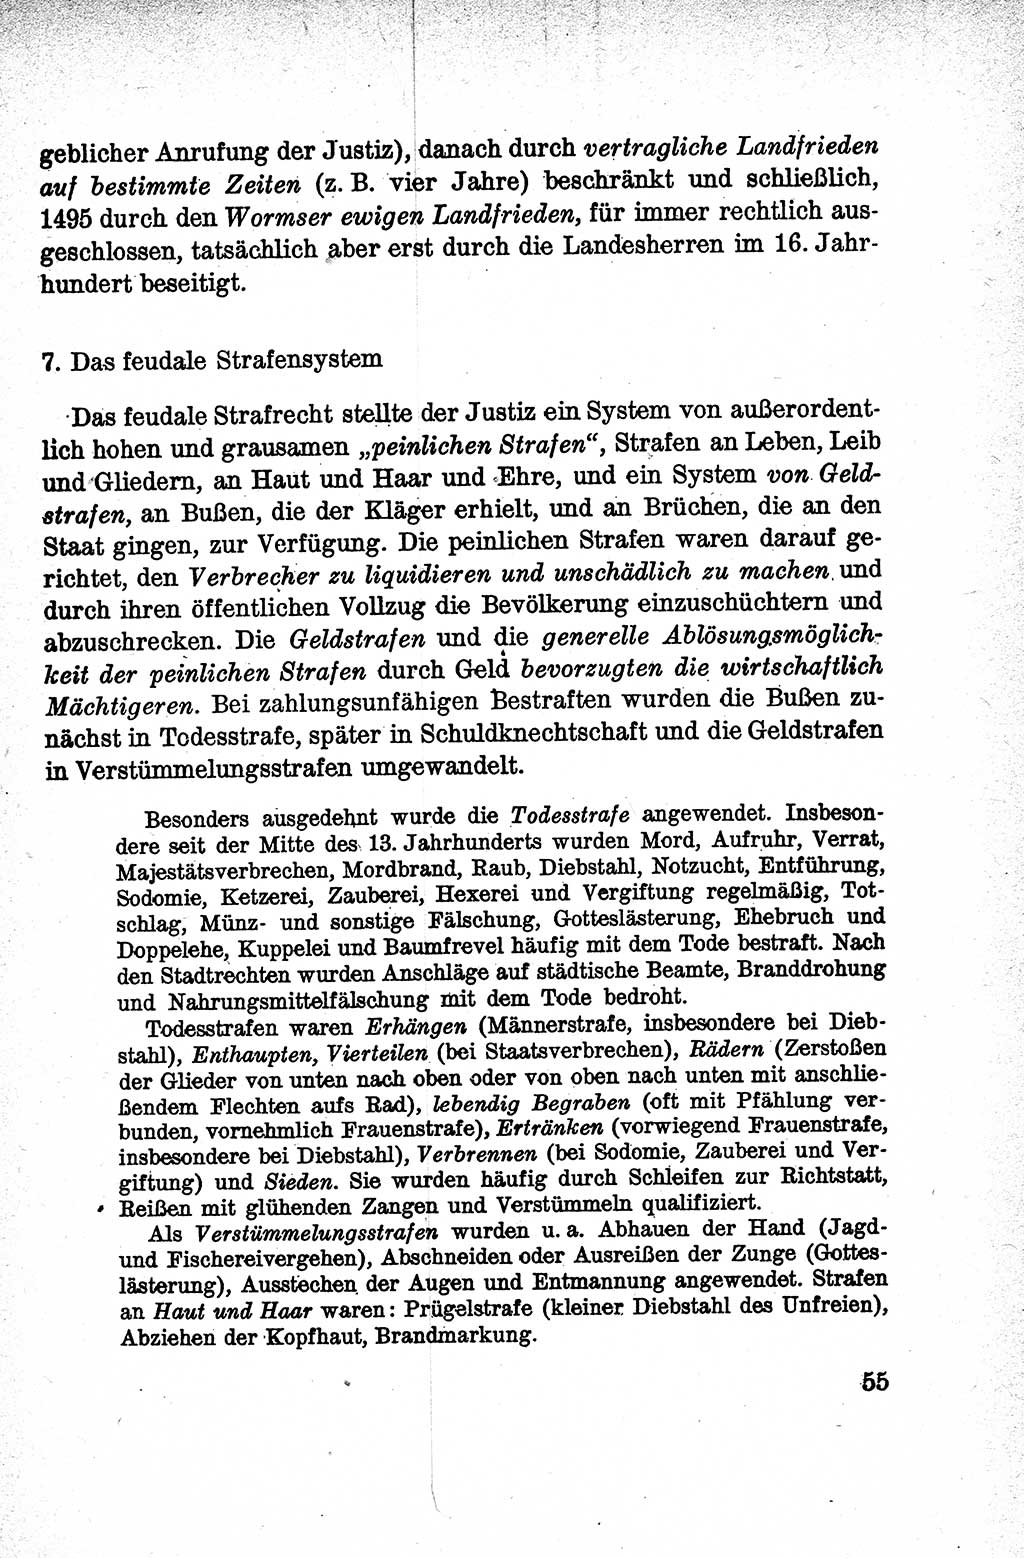 Lehrbuch des Strafrechts der Deutschen Demokratischen Republik (DDR), Allgemeiner Teil 1959, Seite 55 (Lb. Strafr. DDR AT 1959, S. 55)